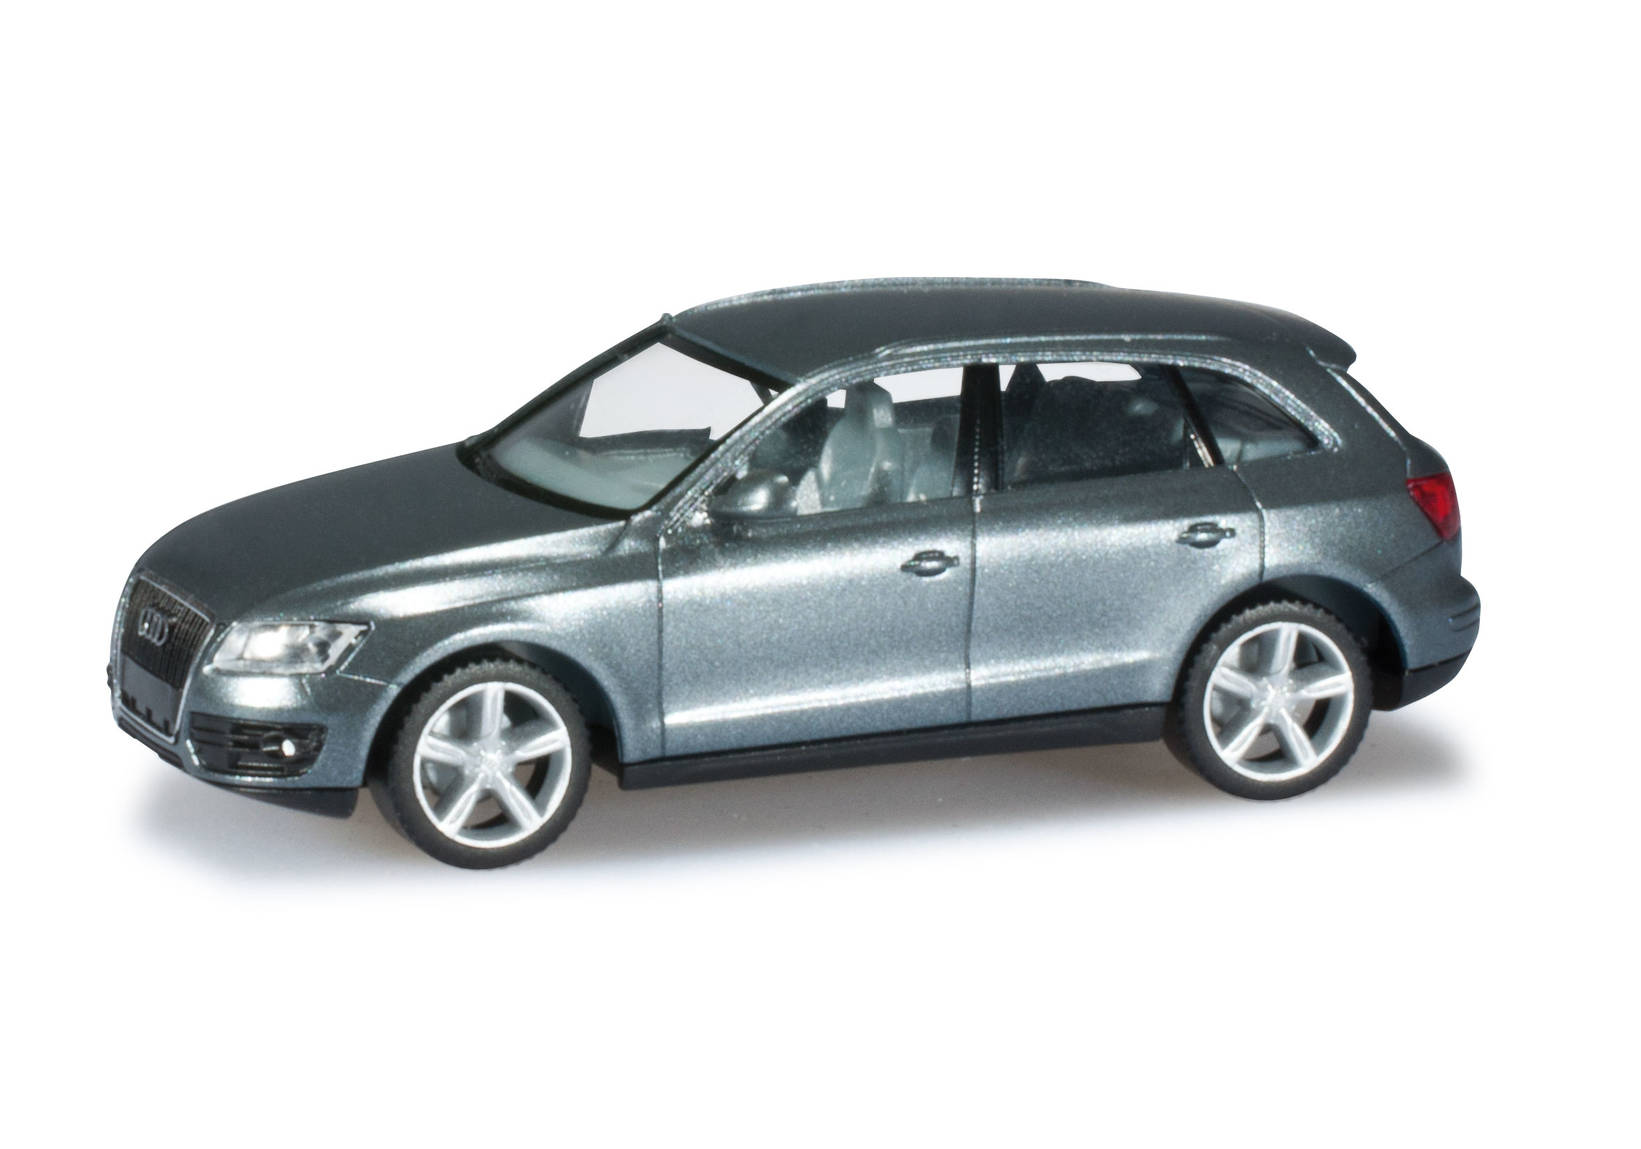 Audi Q5, monsum grey metallic